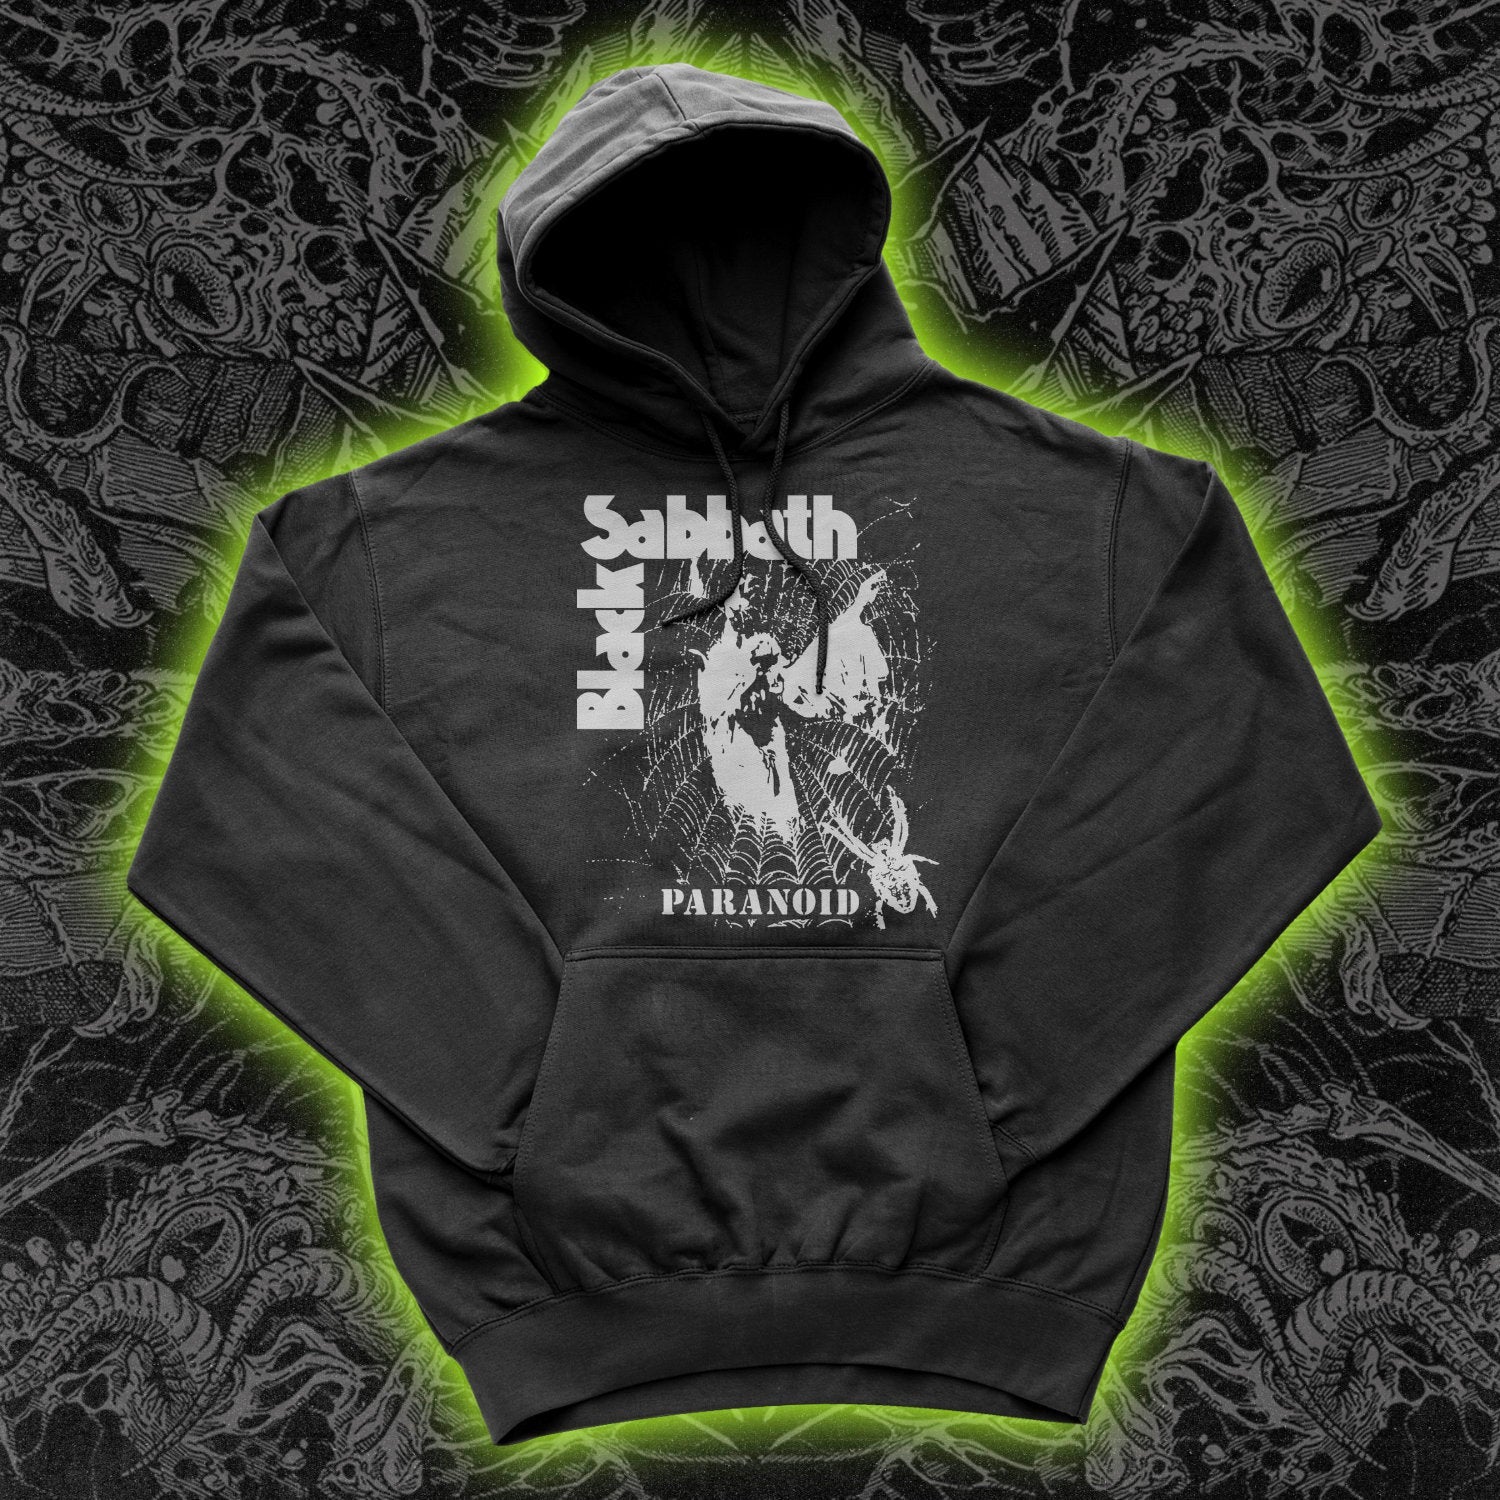 Black Sabbath Paranoid Spider Hoodie